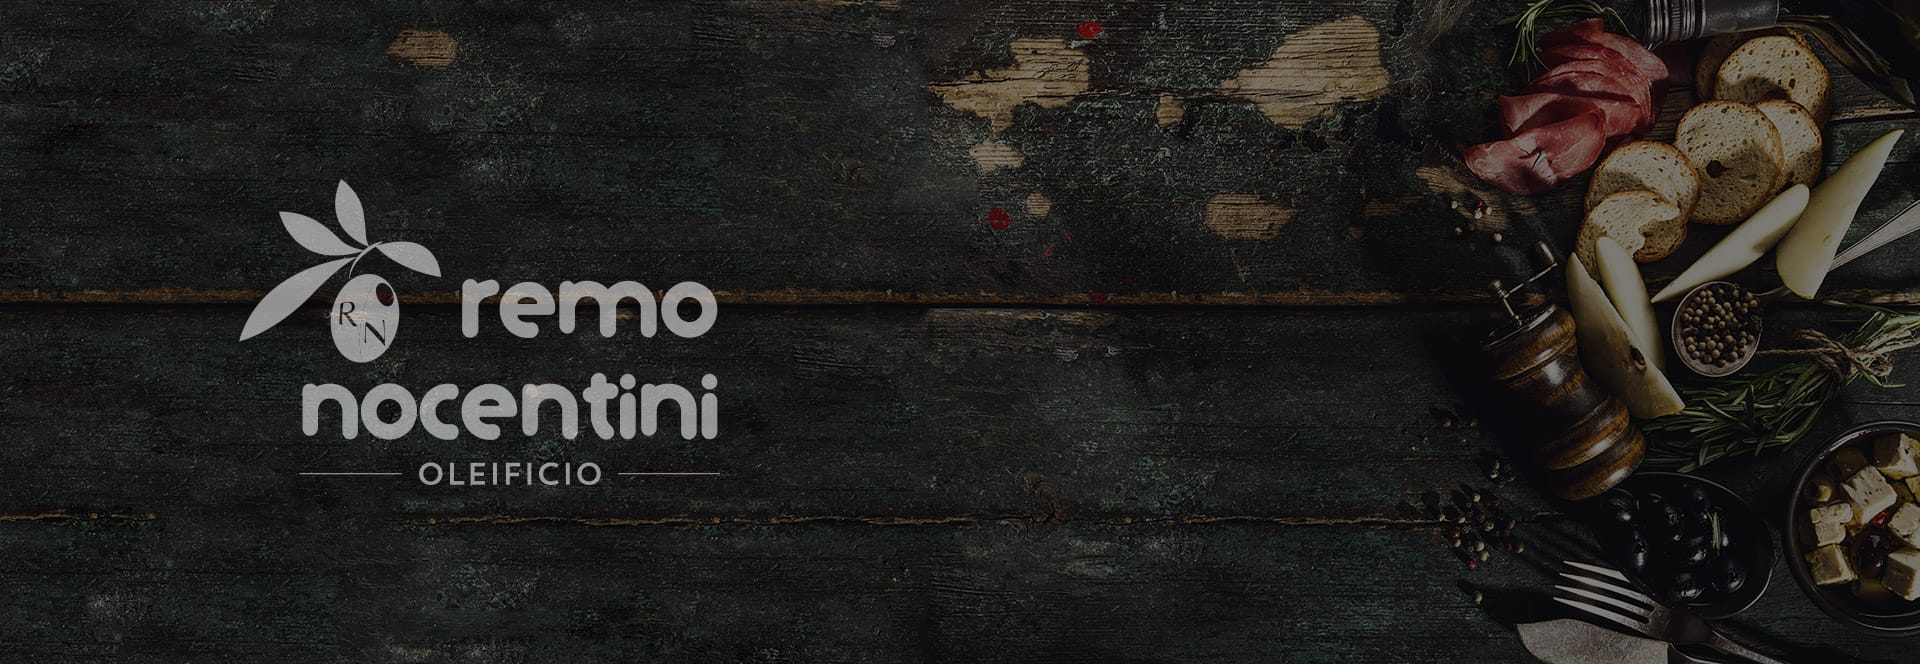 Olio Nocentini | Oleificio a Castiglion Fiorentino Remo Nocentini | Olio extravergine di oliva italiano